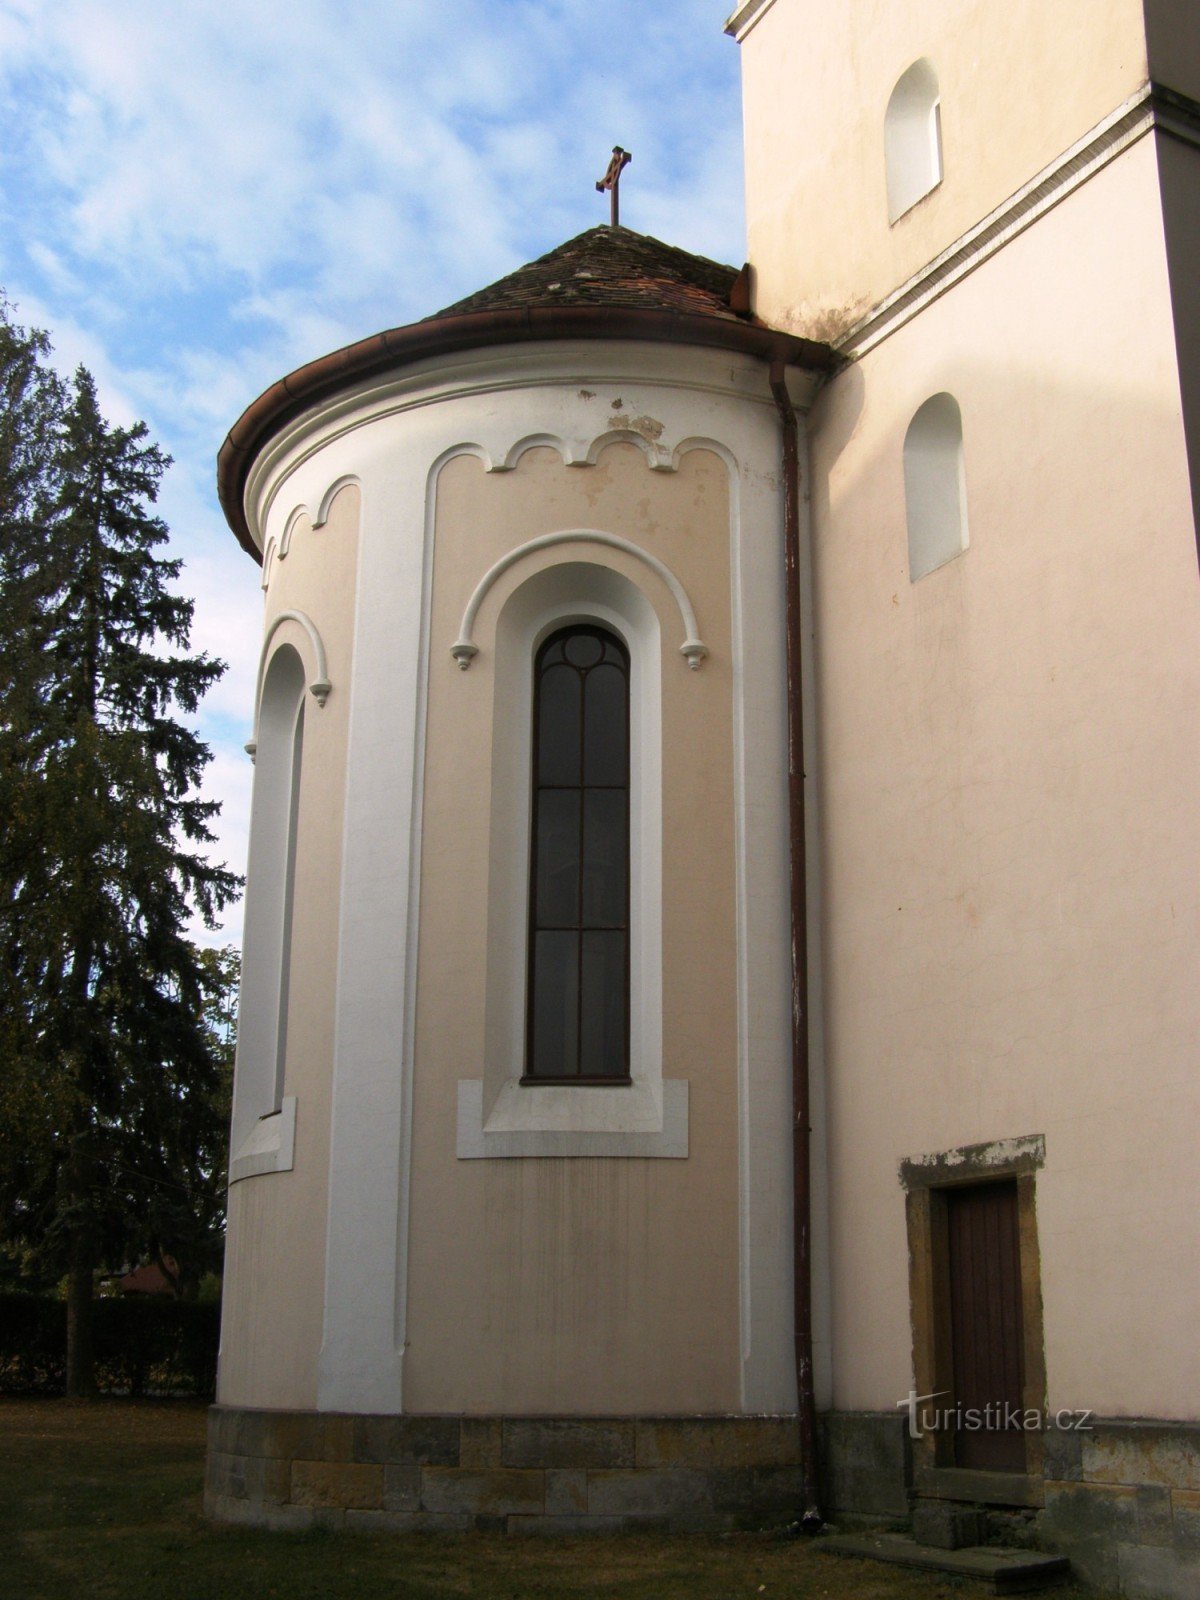 Nepolisy - kerk van St. Maria Magdalena